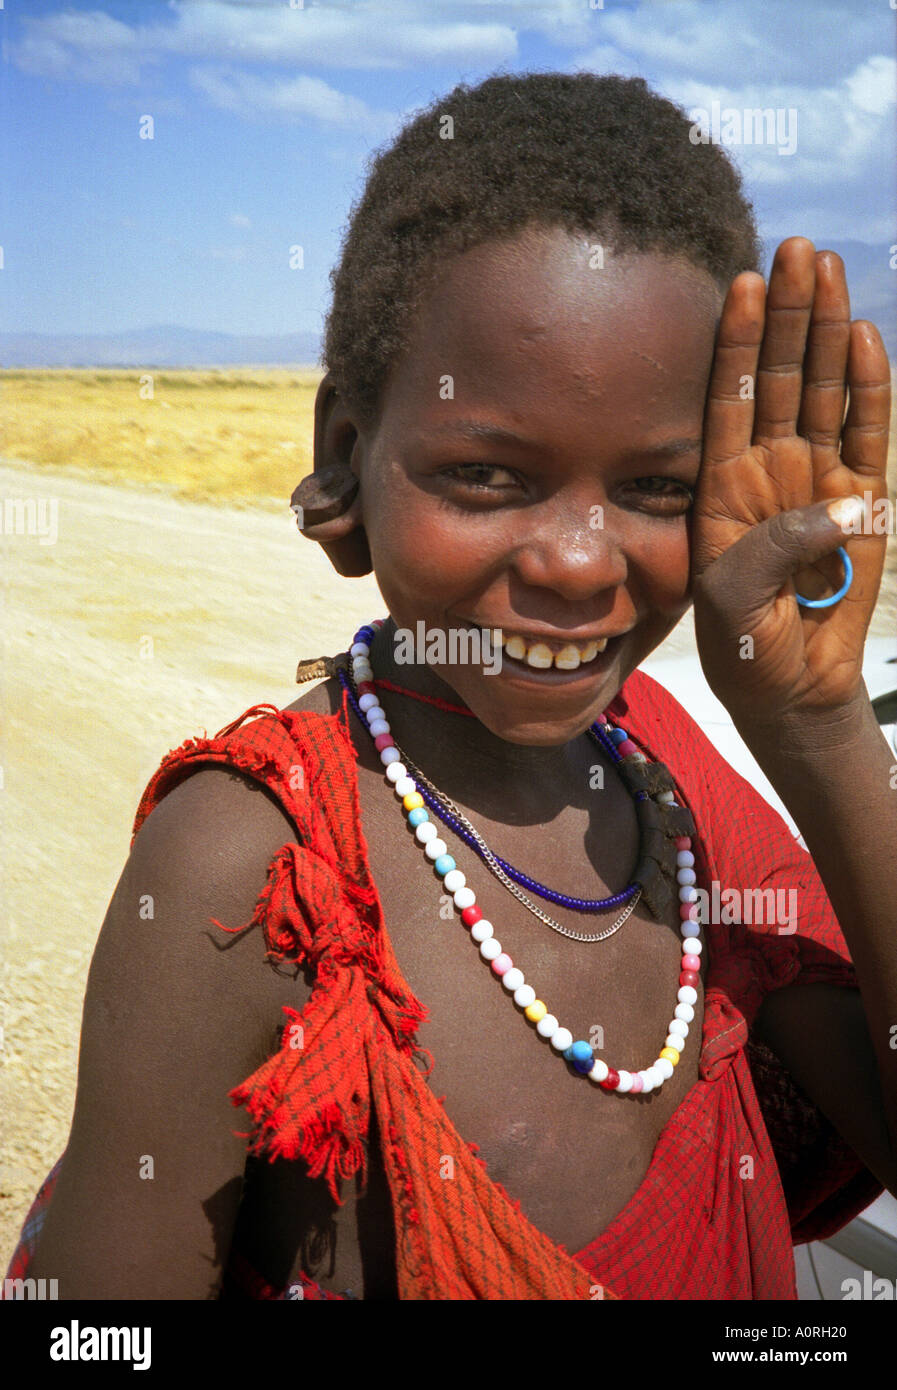 Smiling boy décoré de perles colorées travail peuple masai Masai Mara National Reserve d'Ewaso Ngiro sud du Kenya Afrique de l'Est Banque D'Images